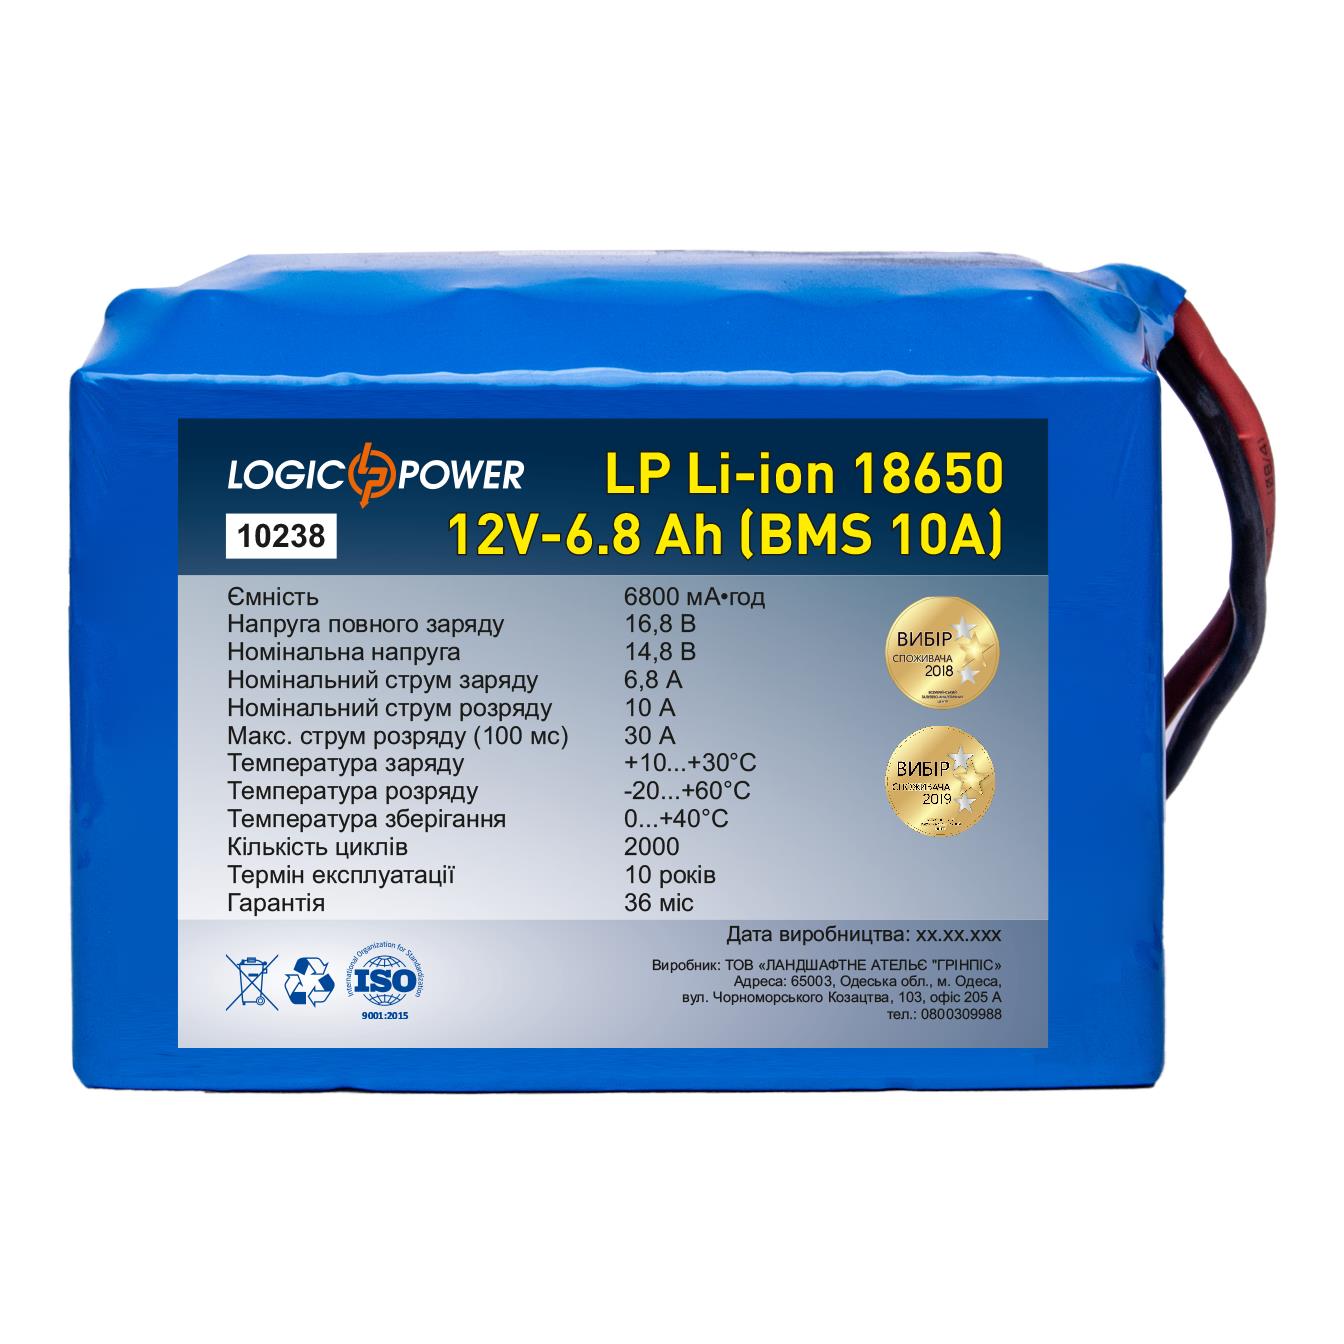 Акумулятор літій-іонний LogicPower LP Li-ion 18650 12V - 6.8 Ah (BMS 10A) (10238) в інтернет-магазині, головне фото